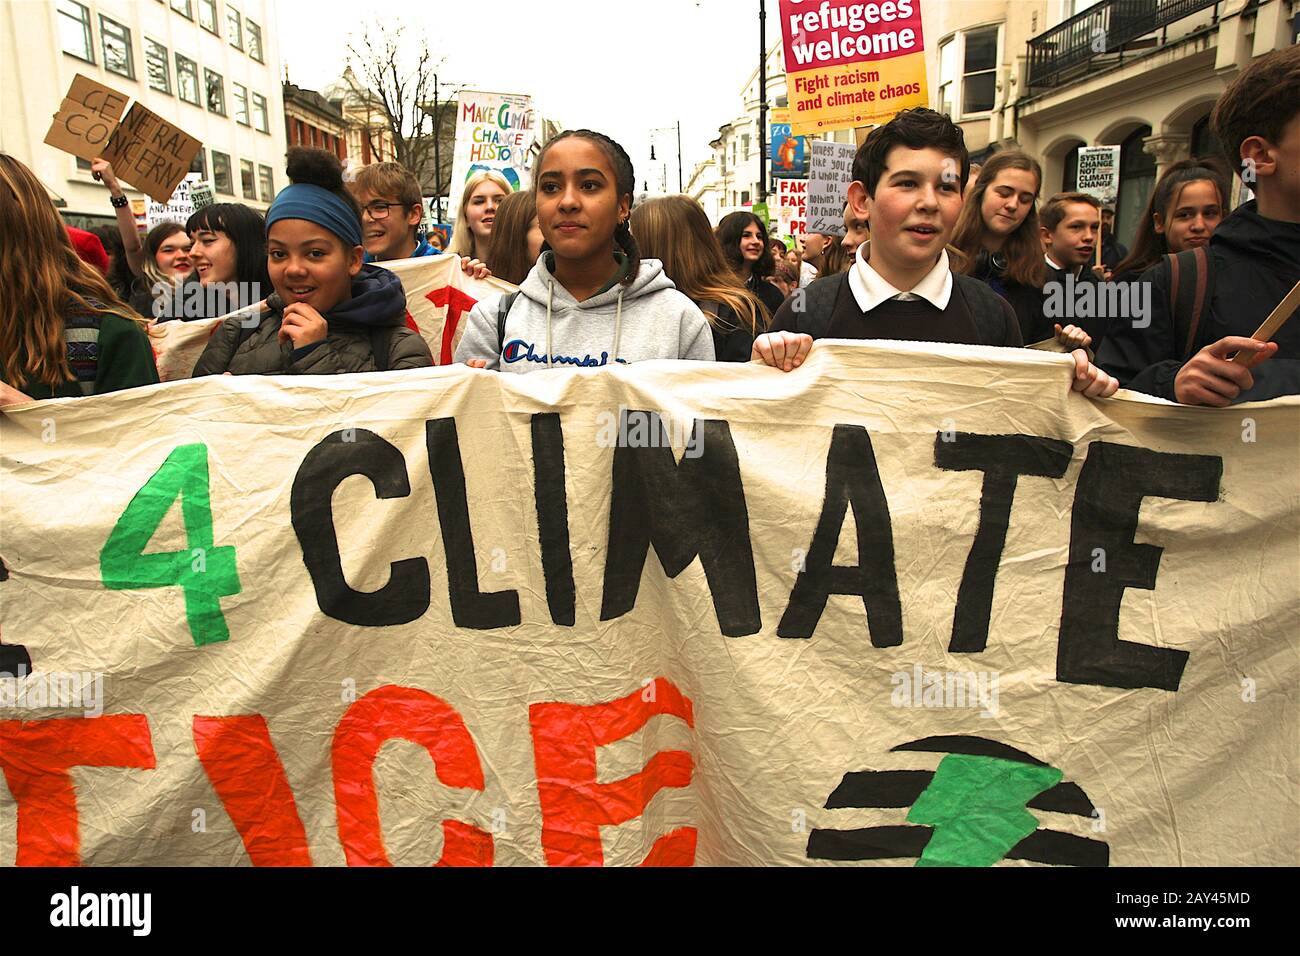 Brighton, Regno Unito, 14th febbraio 2020, Centinaia di bambini delle scuole vanno in sciopero dalla scuola per chiedere giustizia ambientale e la fermata alla temperatura aumenta. Foto Stock